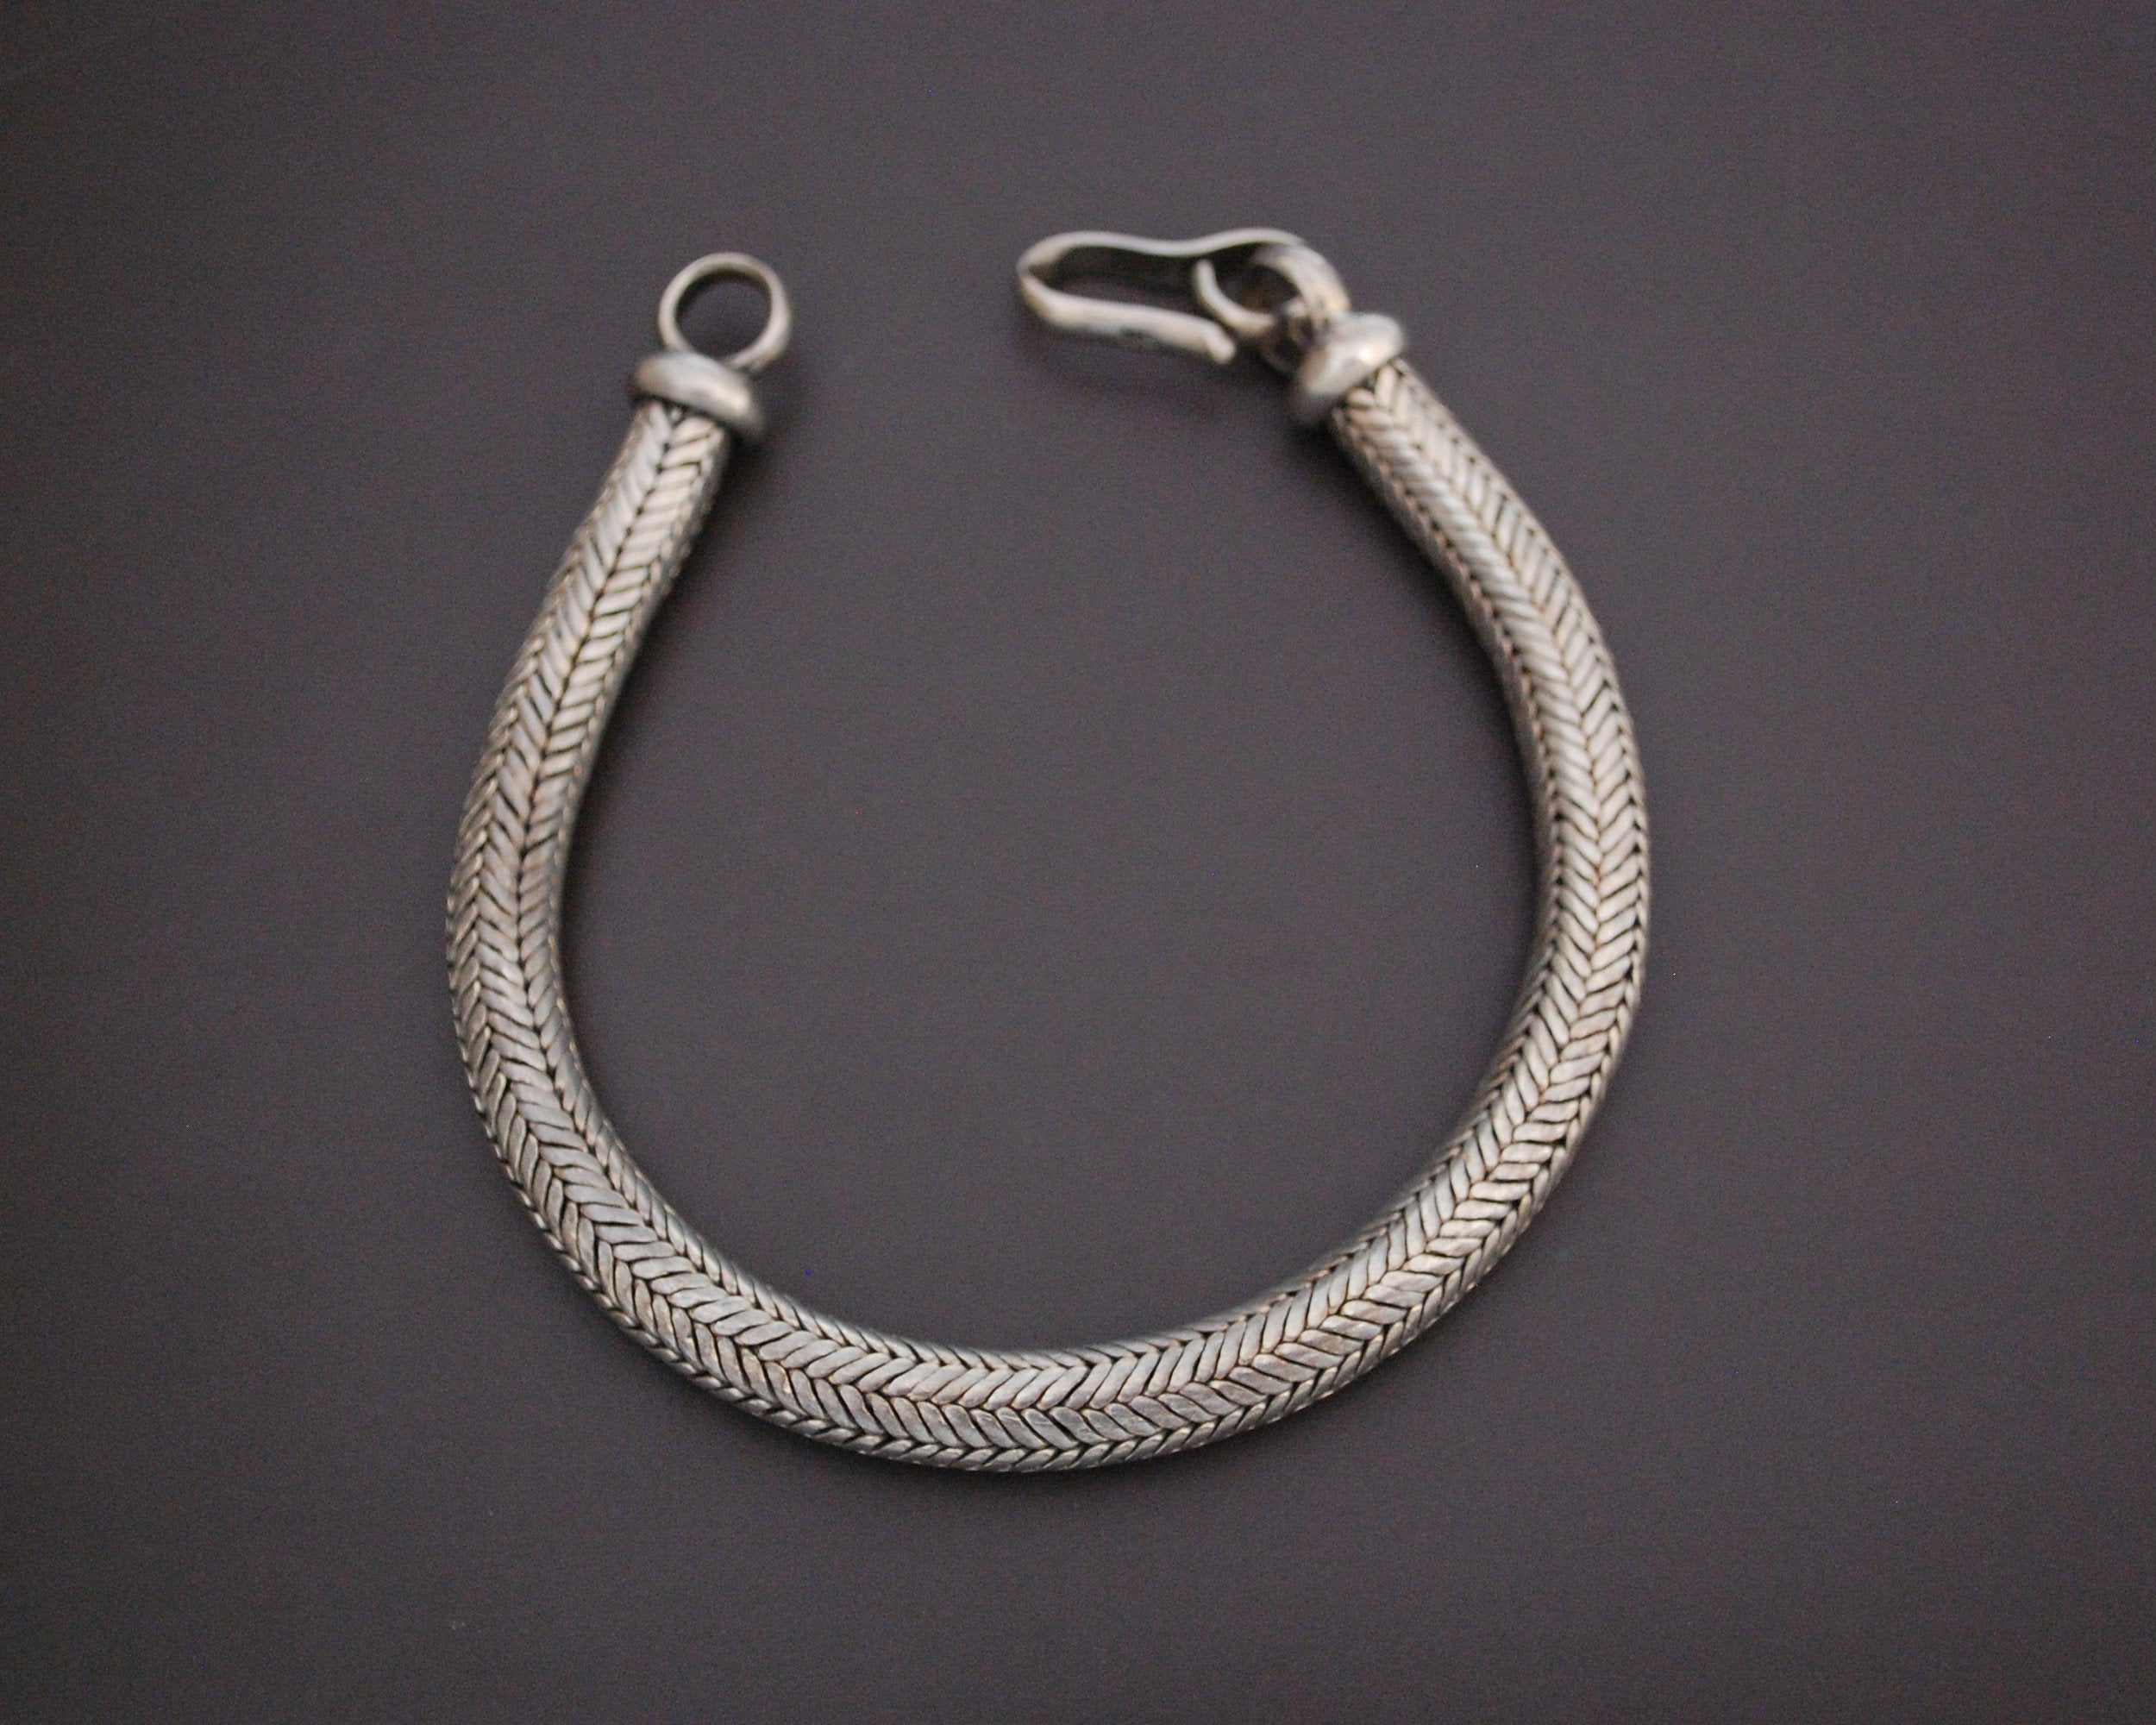 Massive Rajasthan Snake Chain Bracelet